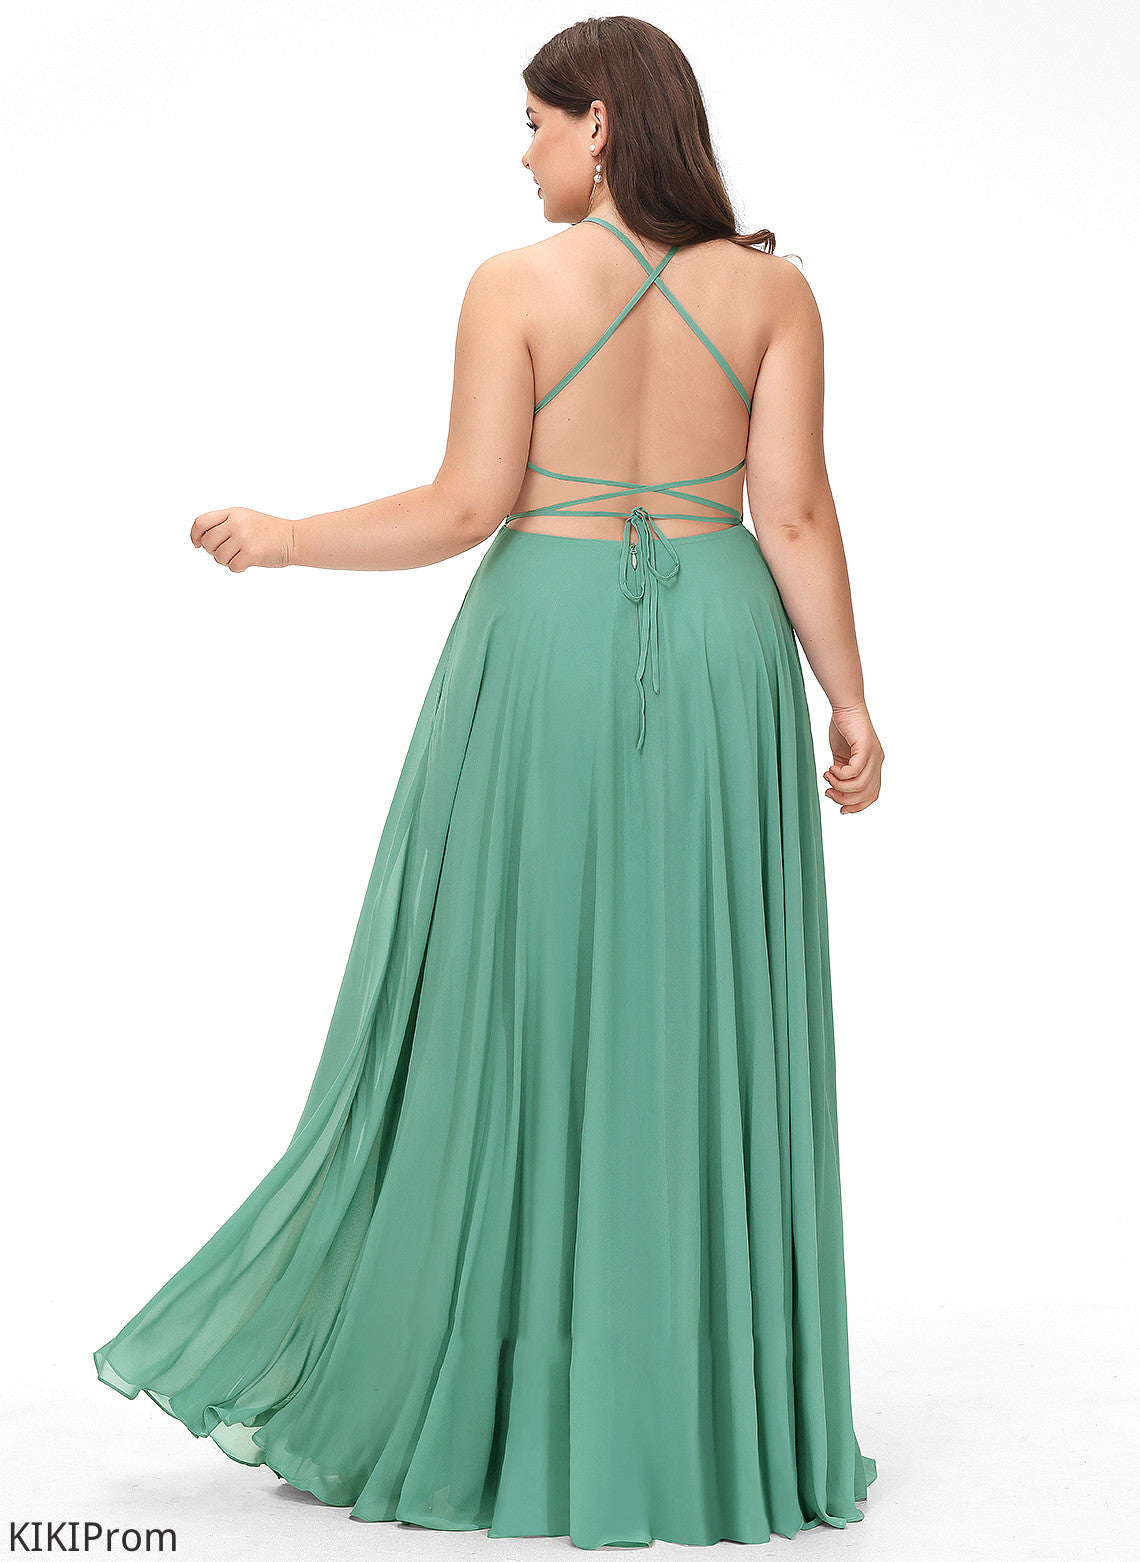 Floor-Length A-Line Neckline Silhouette SquareNeckline Fabric Straps Length Lilah Bridesmaid Dresses